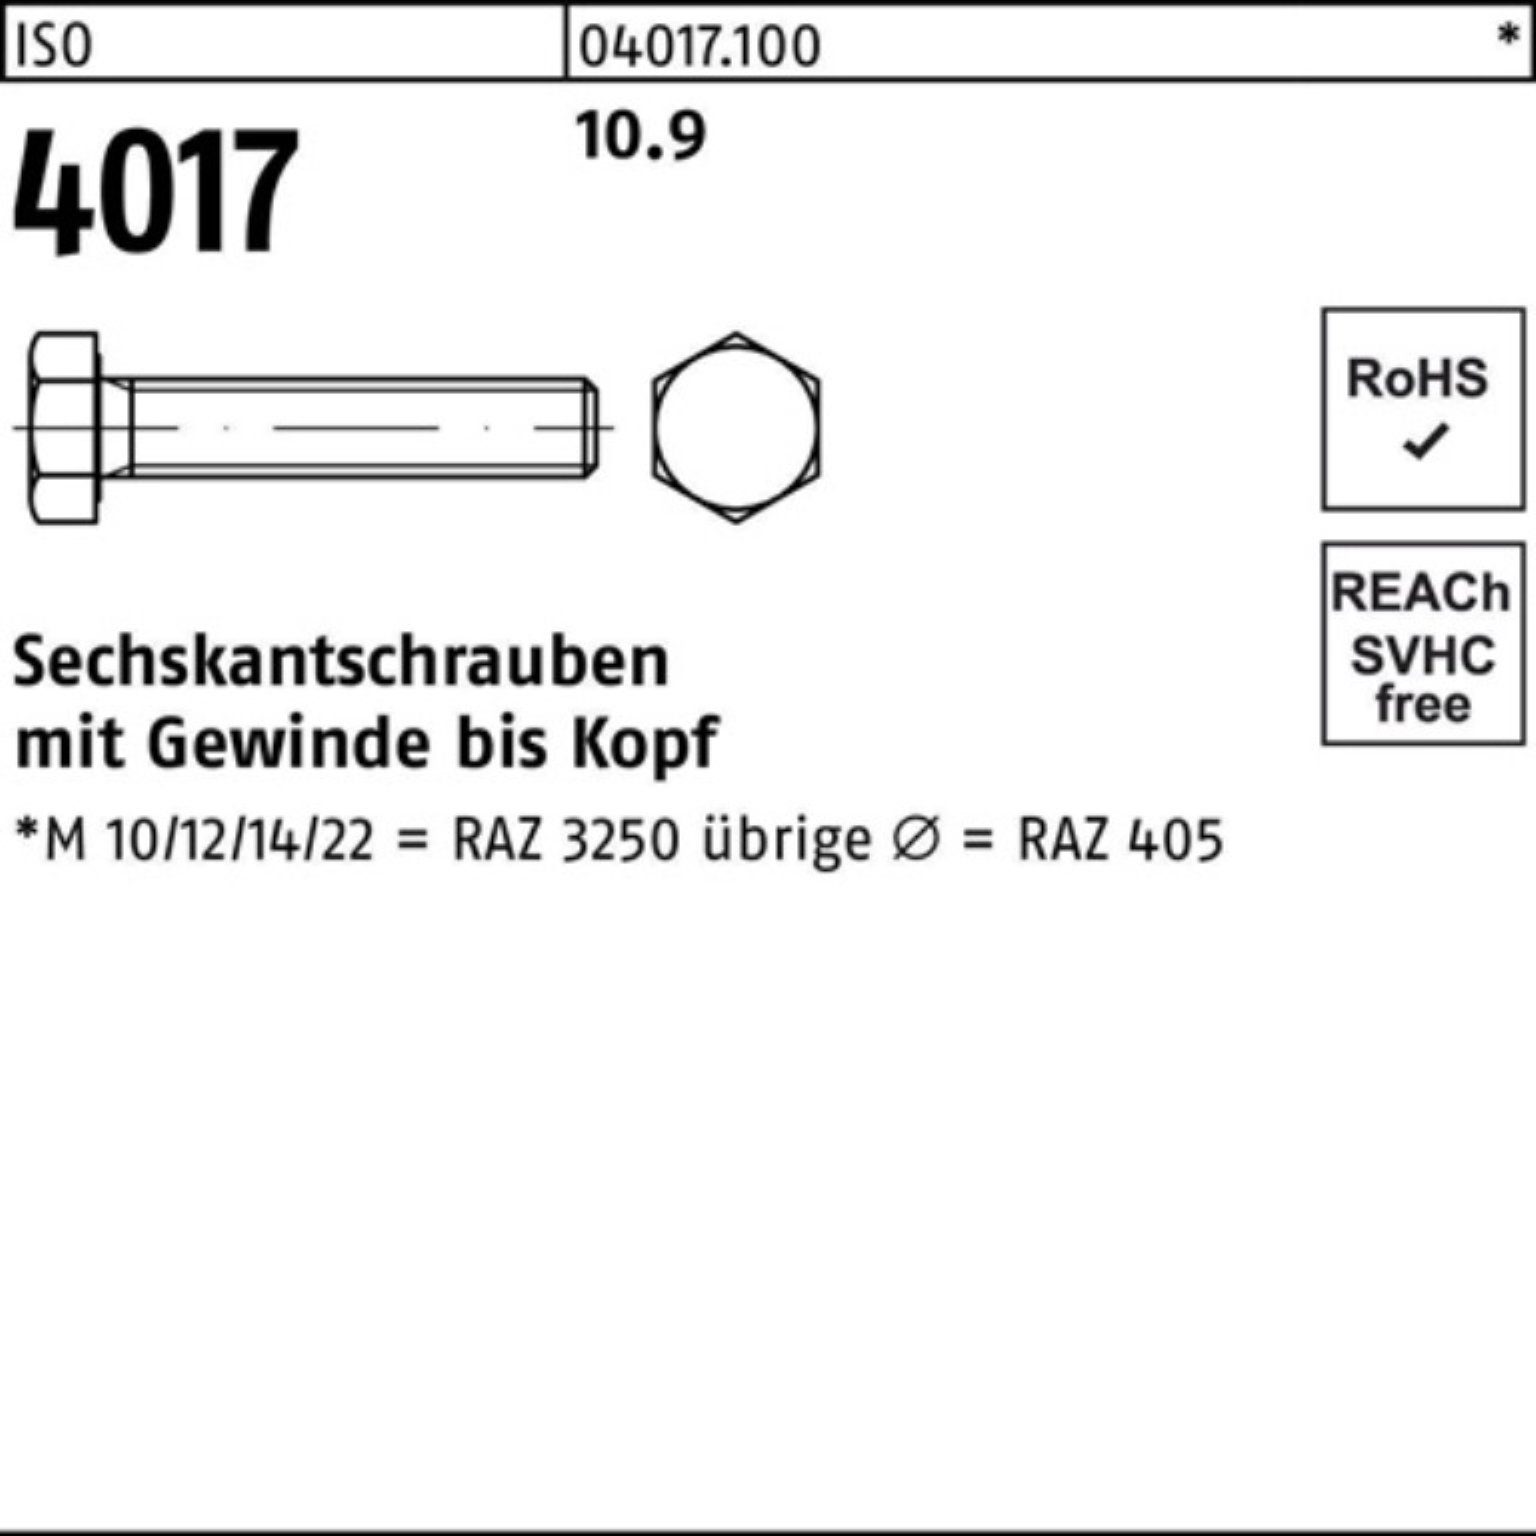 Bufab Sechskantschraube 100er Pack Sechskantschraube 4017 ISO ISO 10.9 1 M42x 40 Stück VG 110